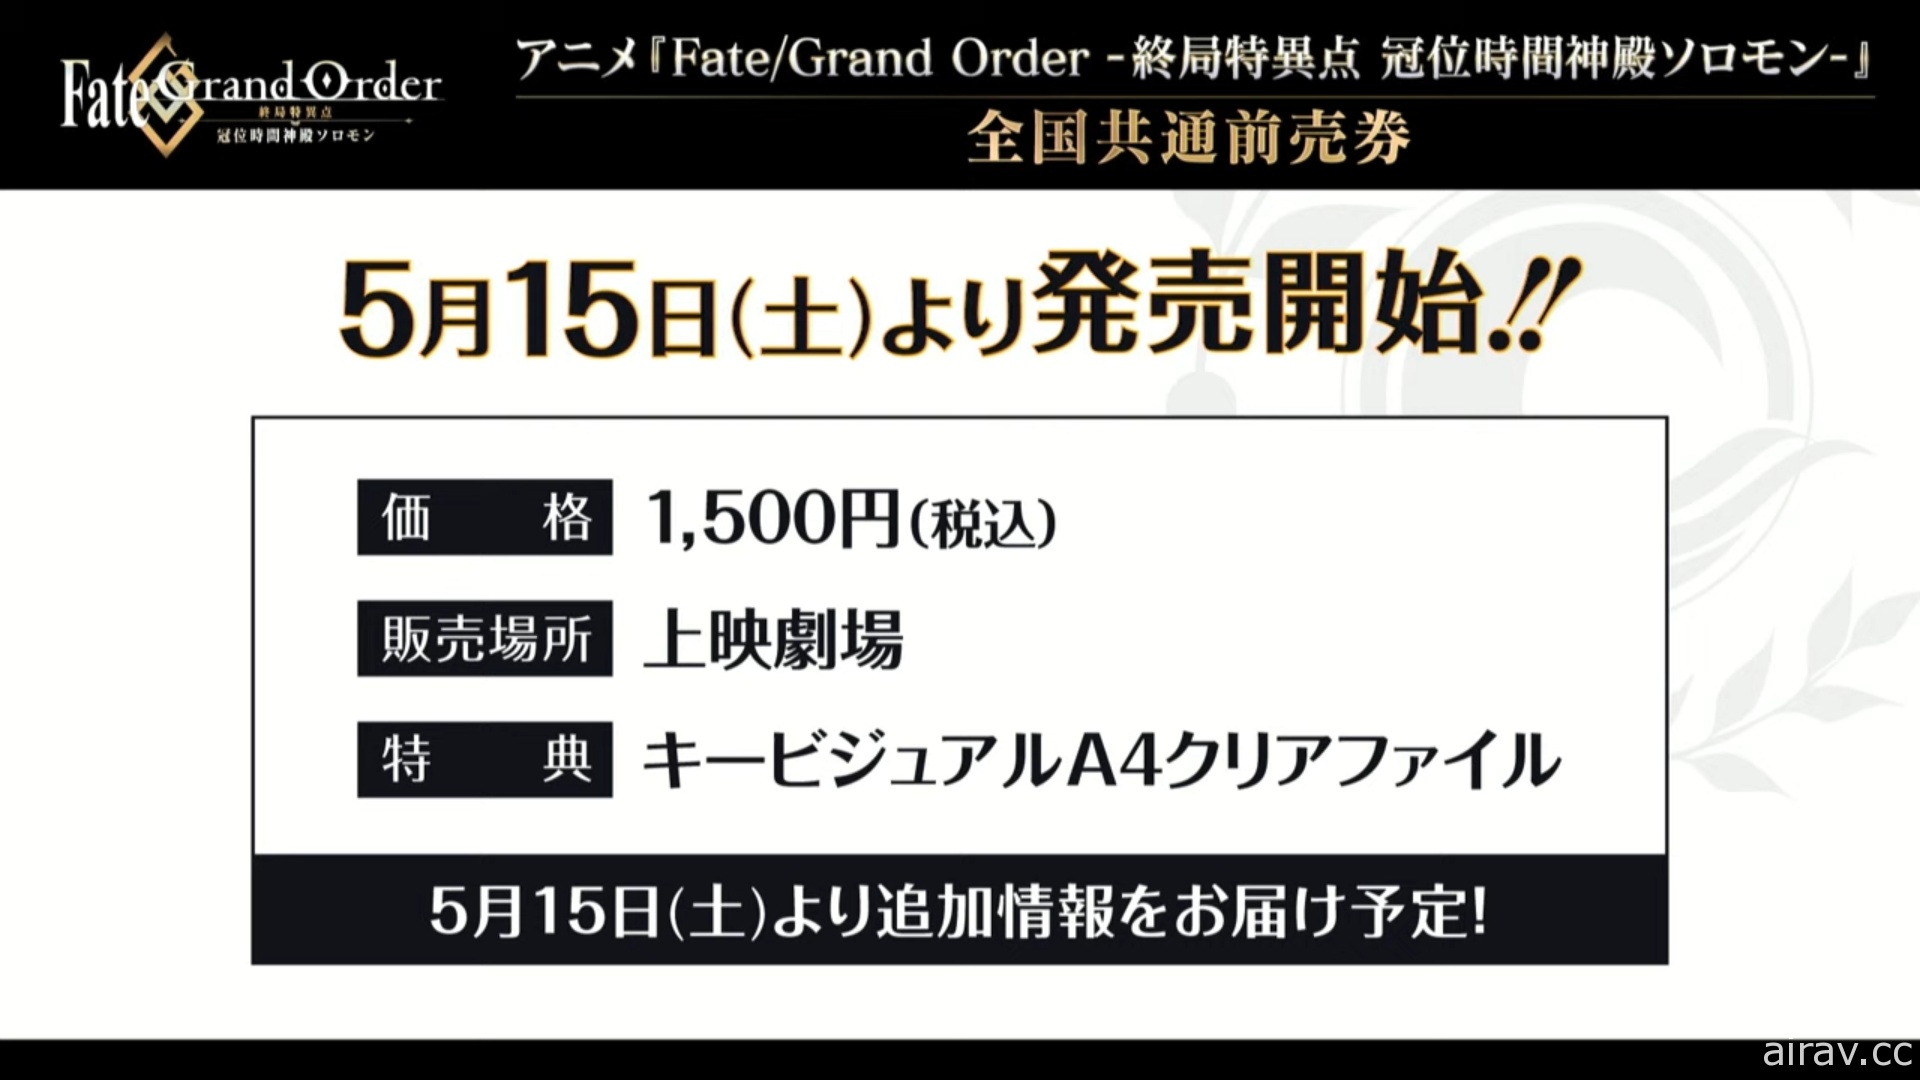 動畫《Fate/Grand Order - 終局特異點 冠位時間神殿所羅門 -》將於日本電影院特別上映